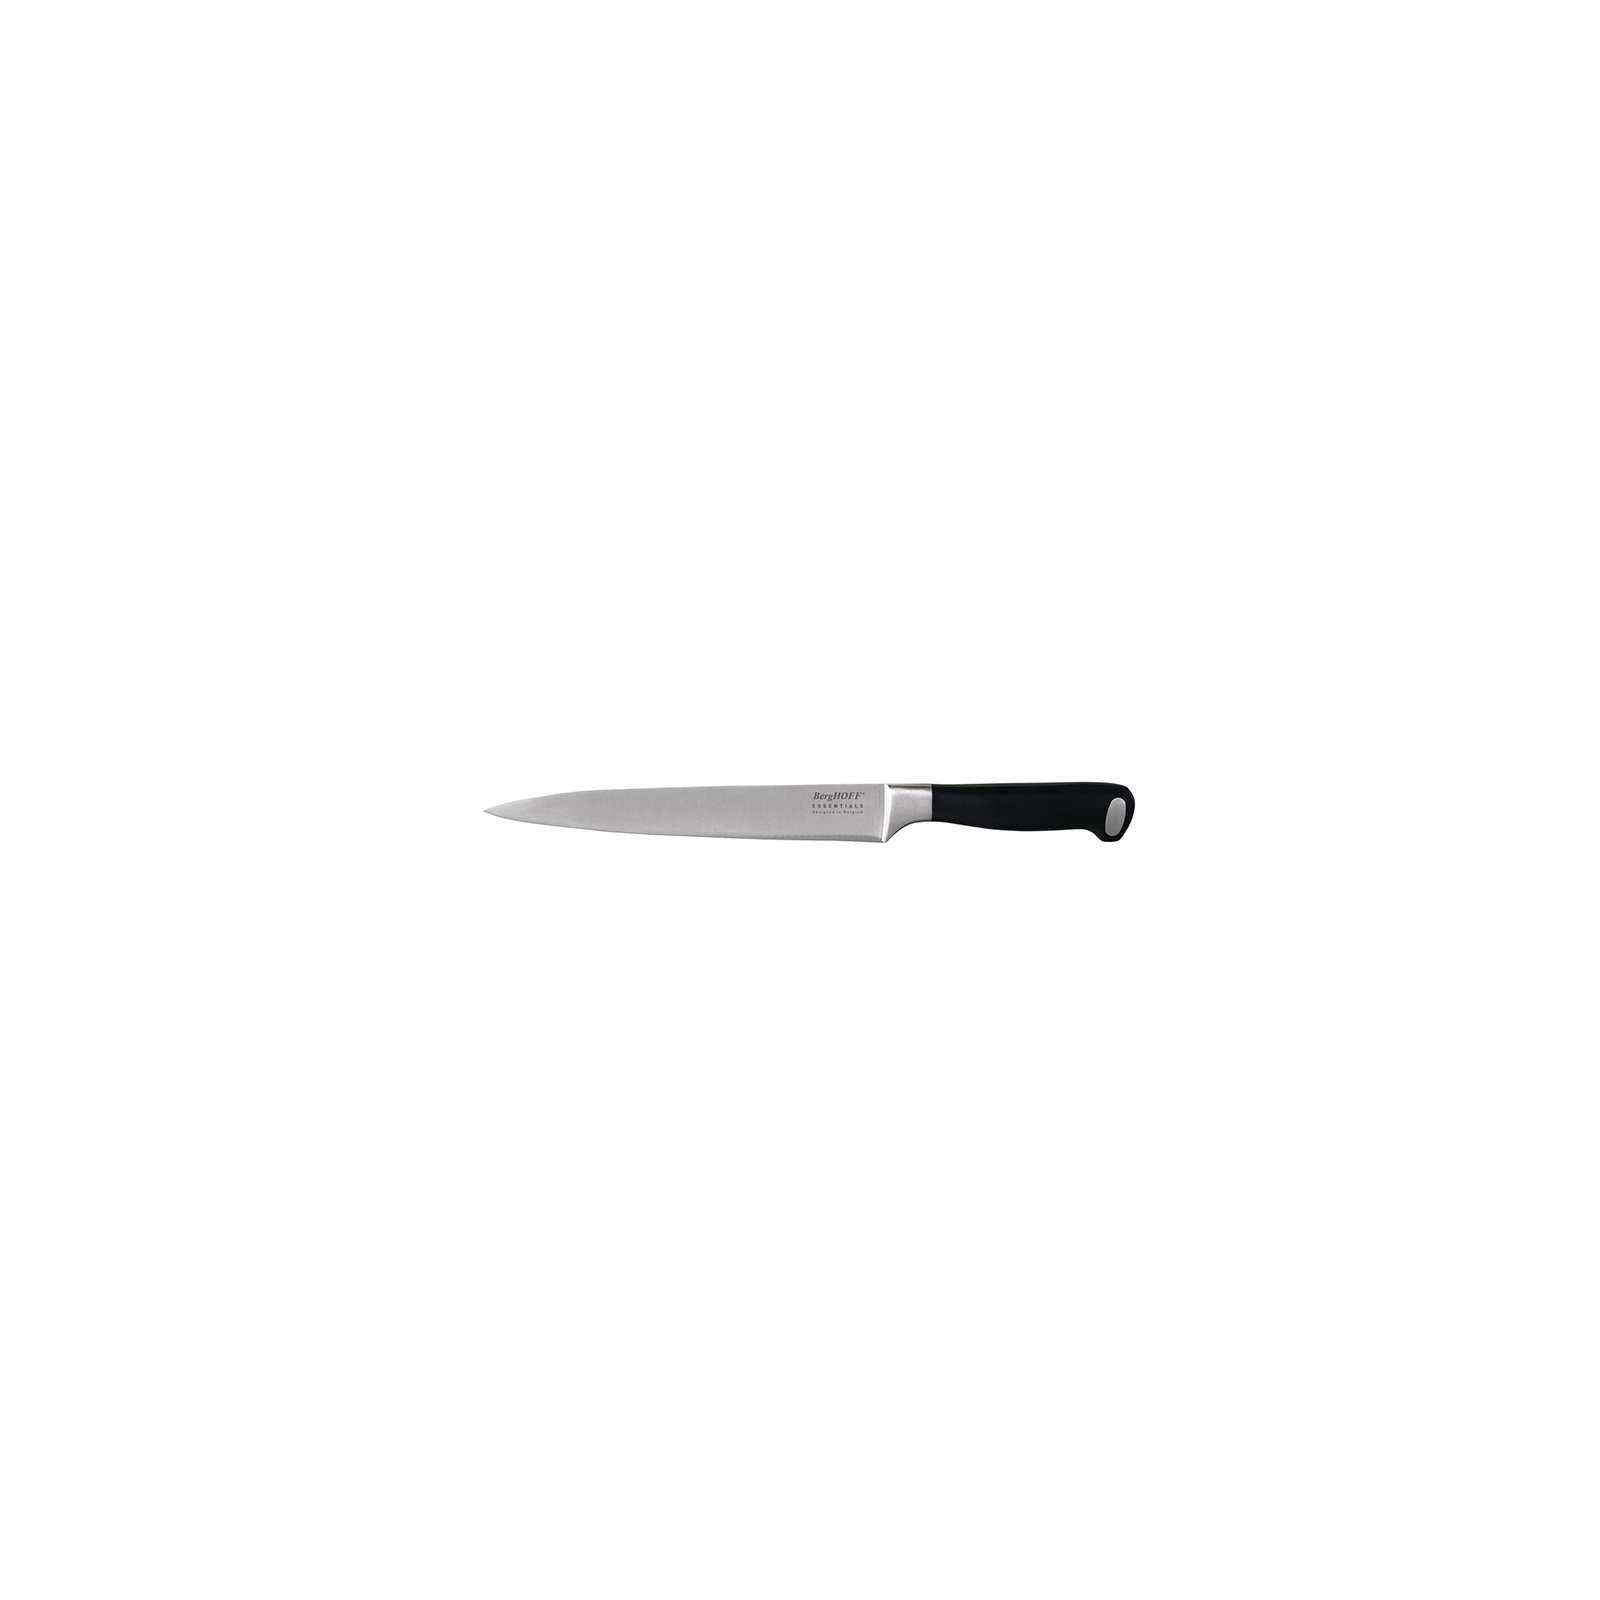 Кухонный нож BergHOFF Essentials разделочный 203 мм (1307142)